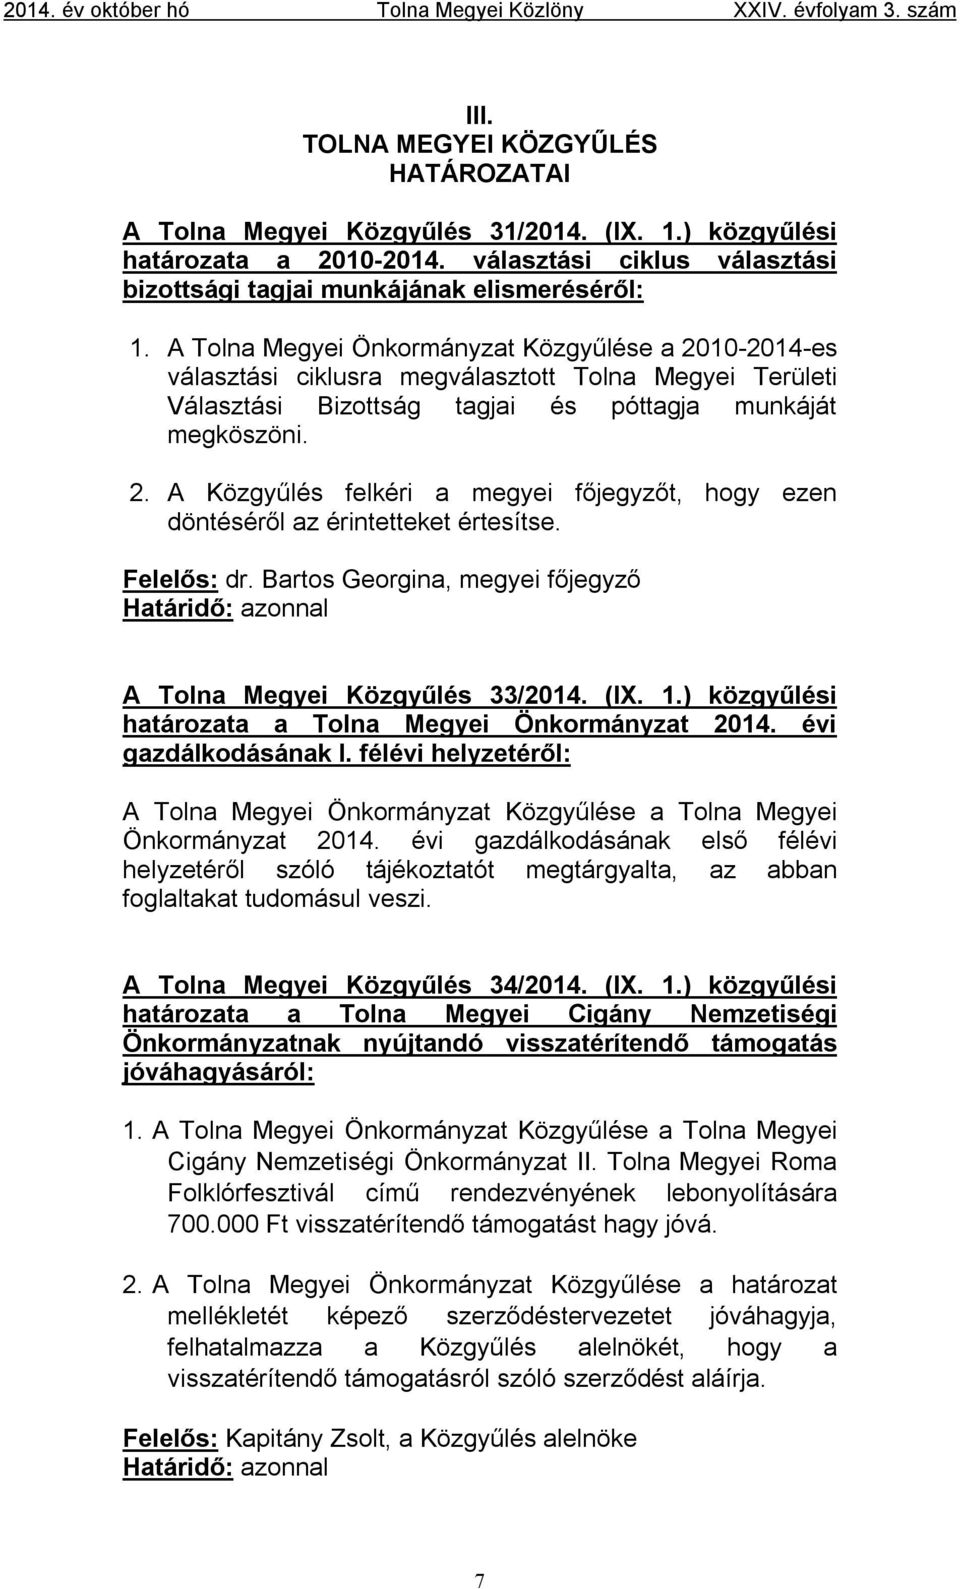 Felelős: dr. Bartos Georgina, megyei főjegyző A Tolna Megyei Közgyűlés 33/2014. (IX. 1.) közgyűlési határozata a Tolna Megyei Önkormányzat 2014. évi gazdálkodásának I.